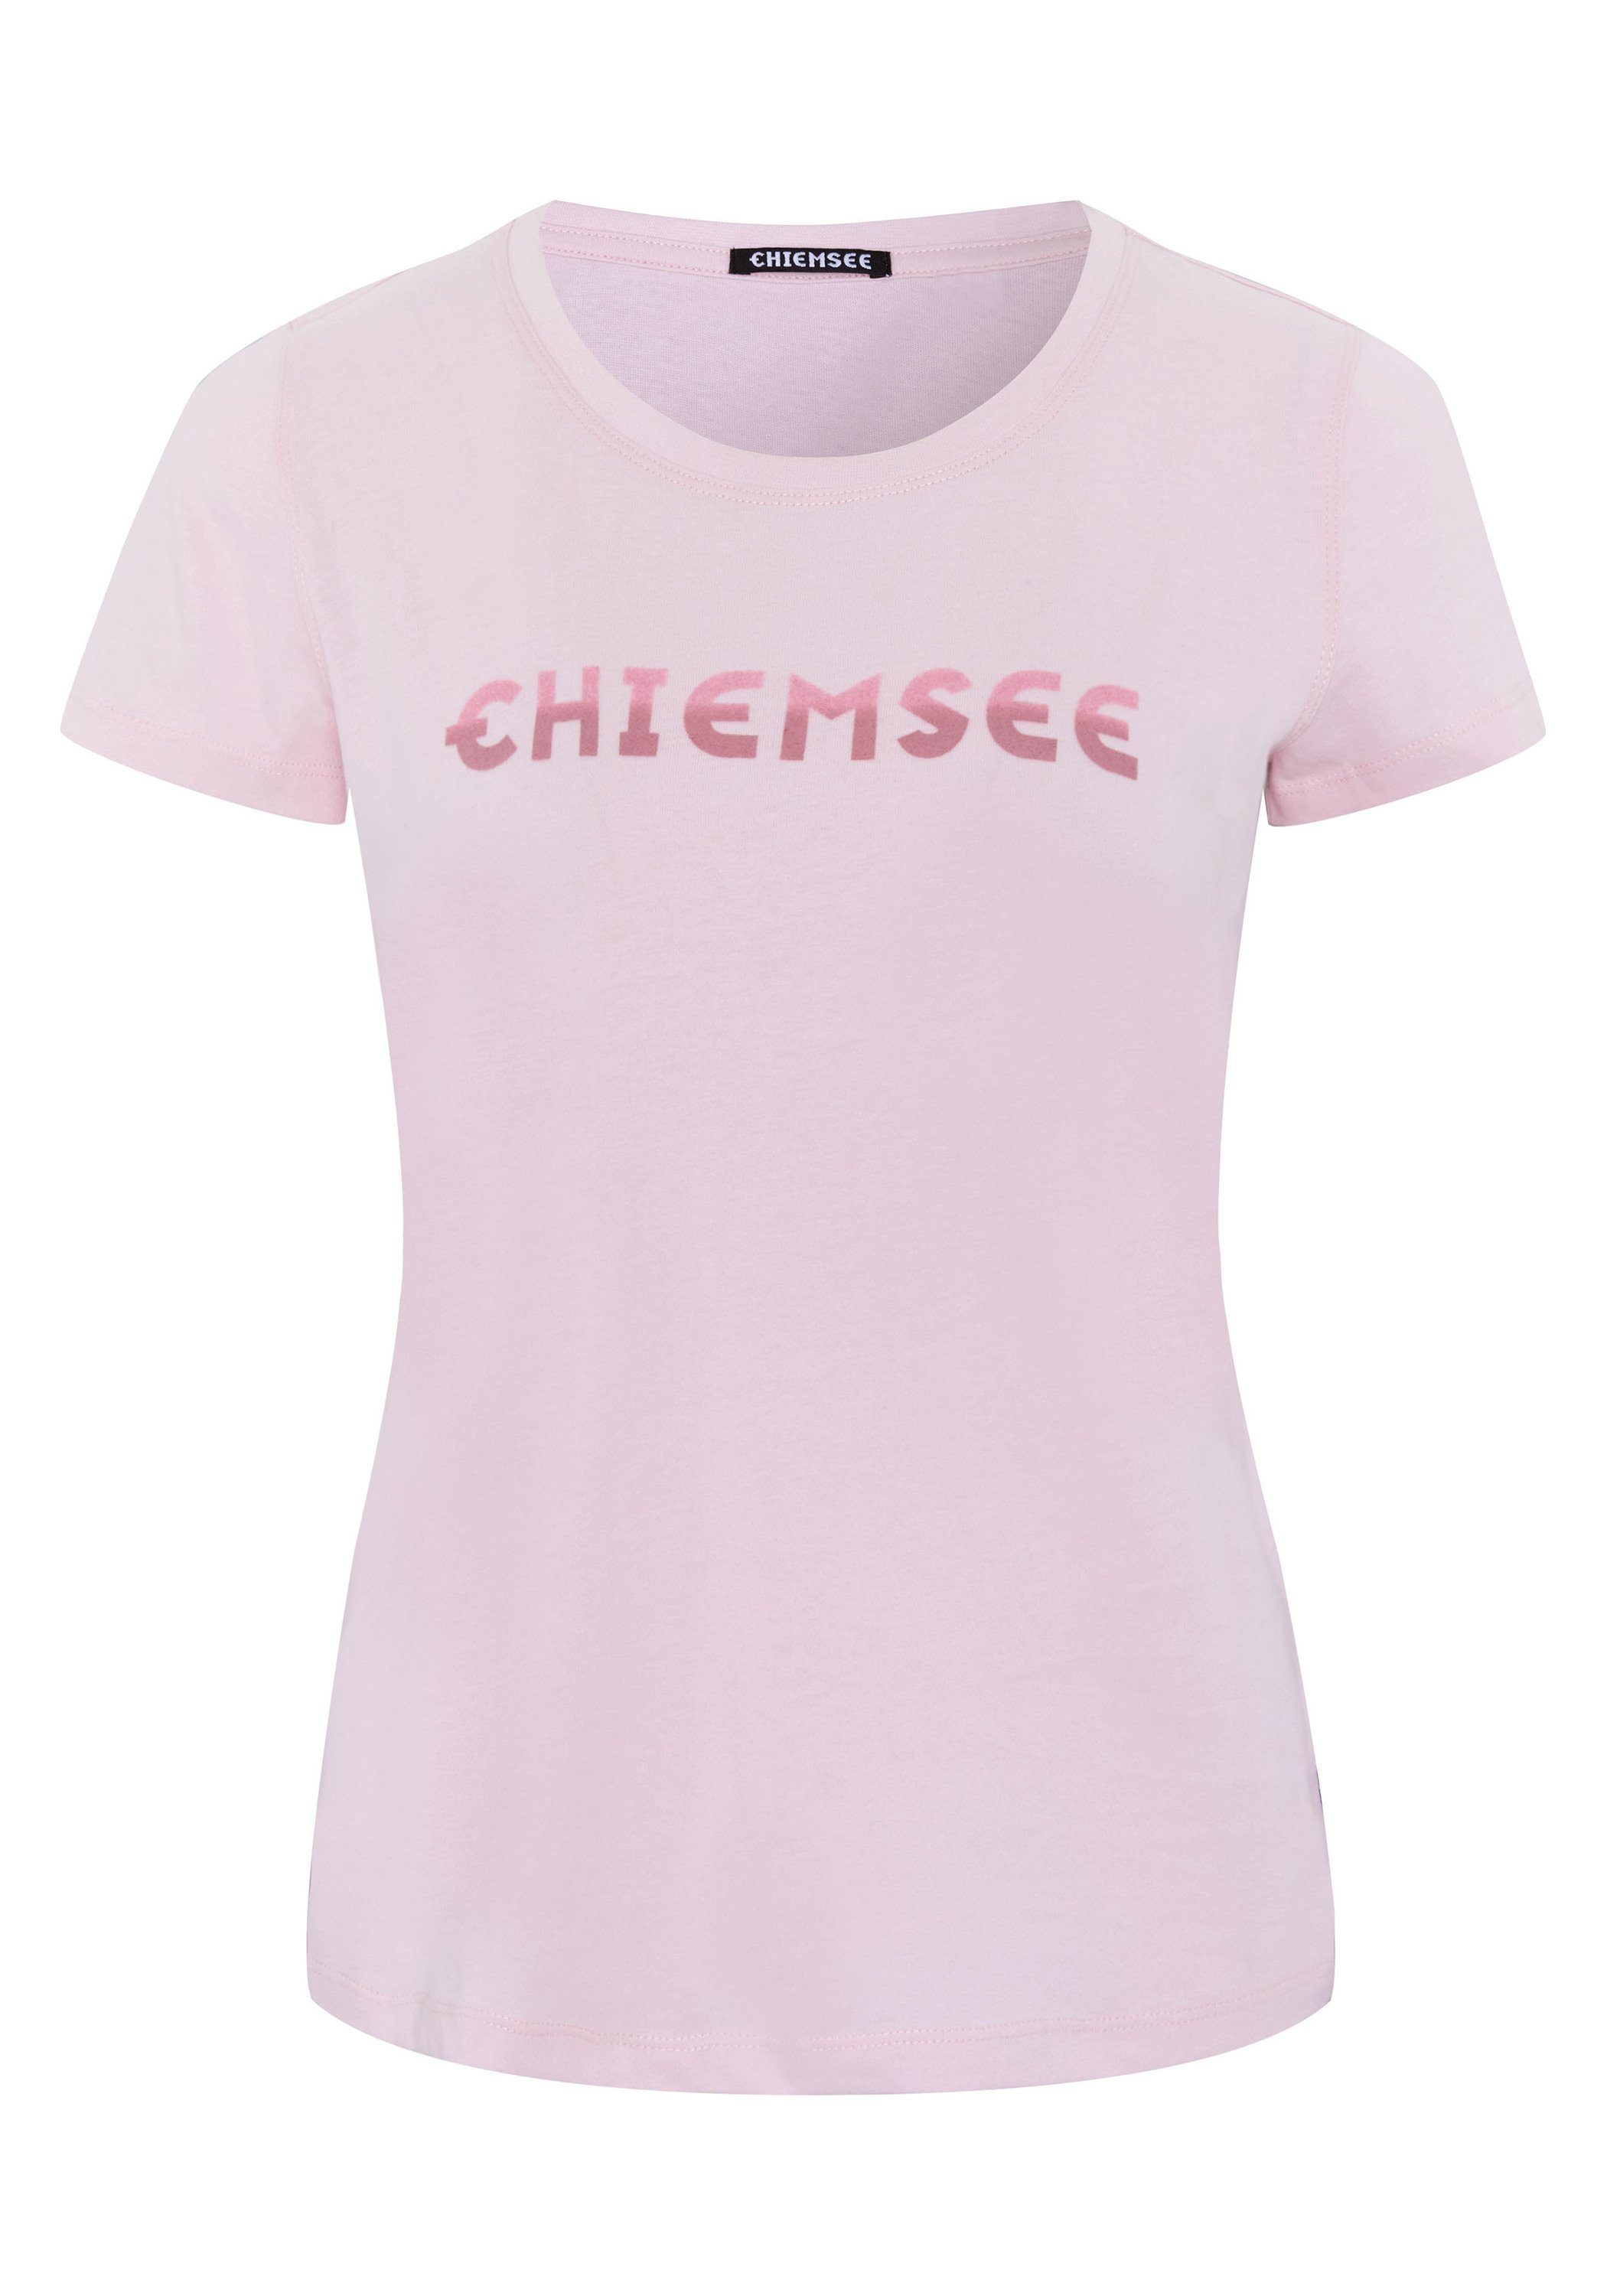 Chiemsee Print-Shirt T-Shirt mit Logo in Farbverlauf-Optik 1 Pink Lady